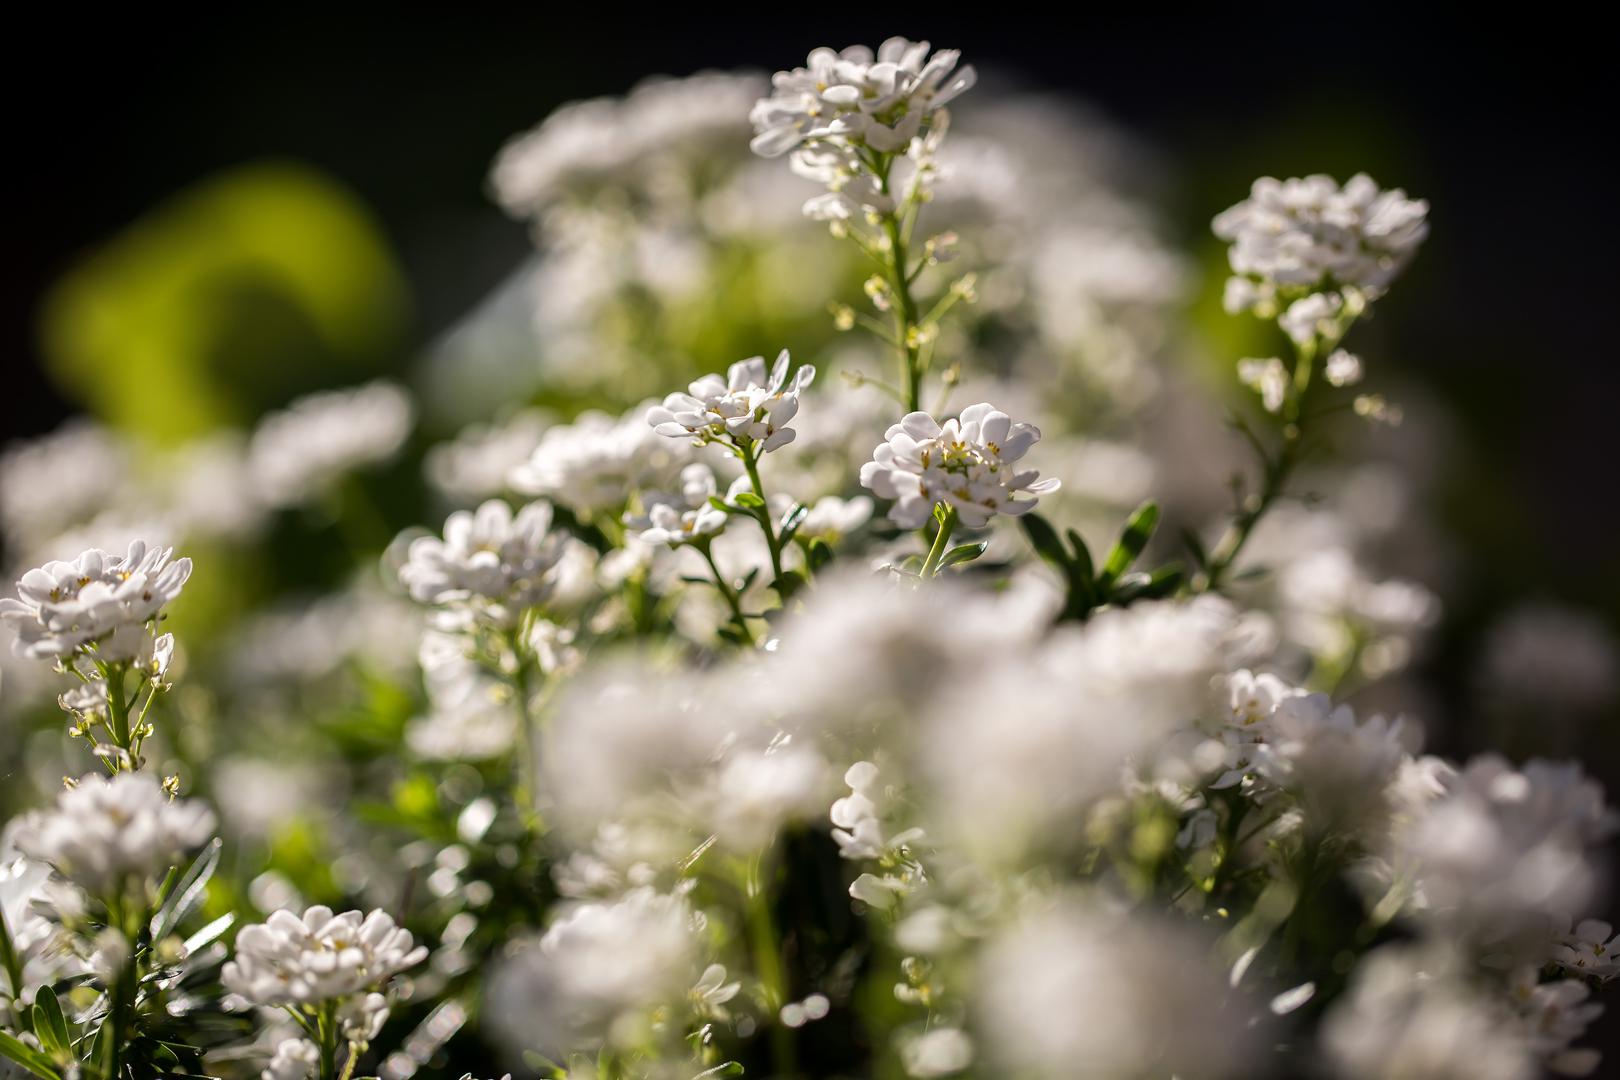 Svibanj - Naziv je značenjski motiviran razdobljem cvjetanja biljke sviba. Riječ je o biljci iz porodice drijenova koja cvjeta bijelim cvijetom u to doba godine. 